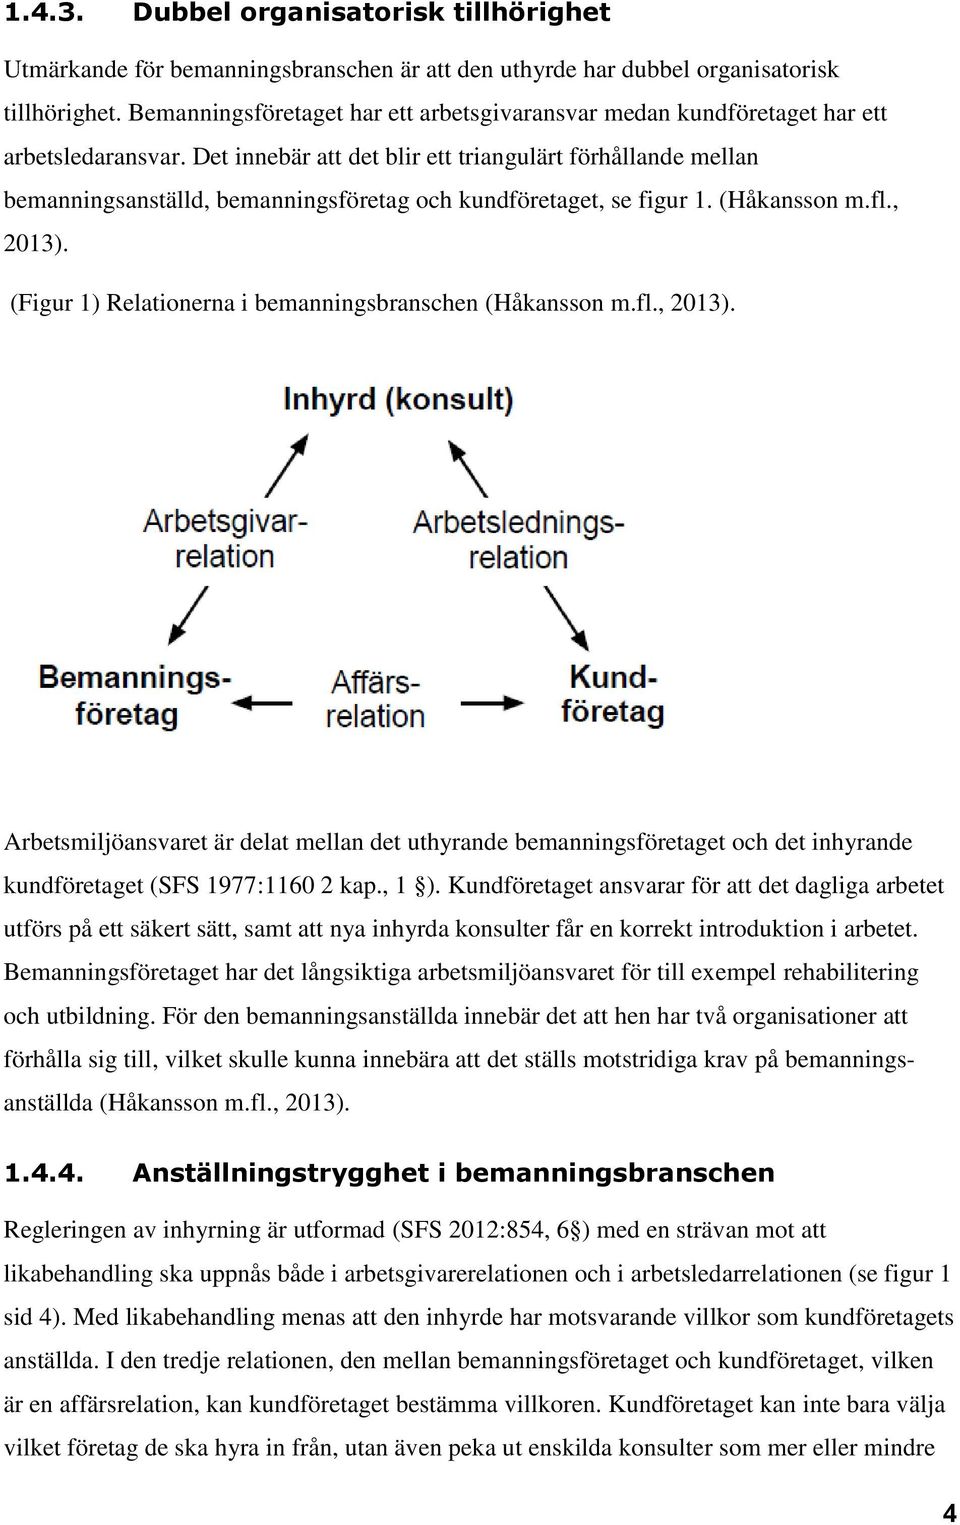 Det innebär att det blir ett triangulärt förhållande mellan bemanningsanställd, bemanningsföretag och kundföretaget, se figur 1. (Håkansson m.fl., 2013).